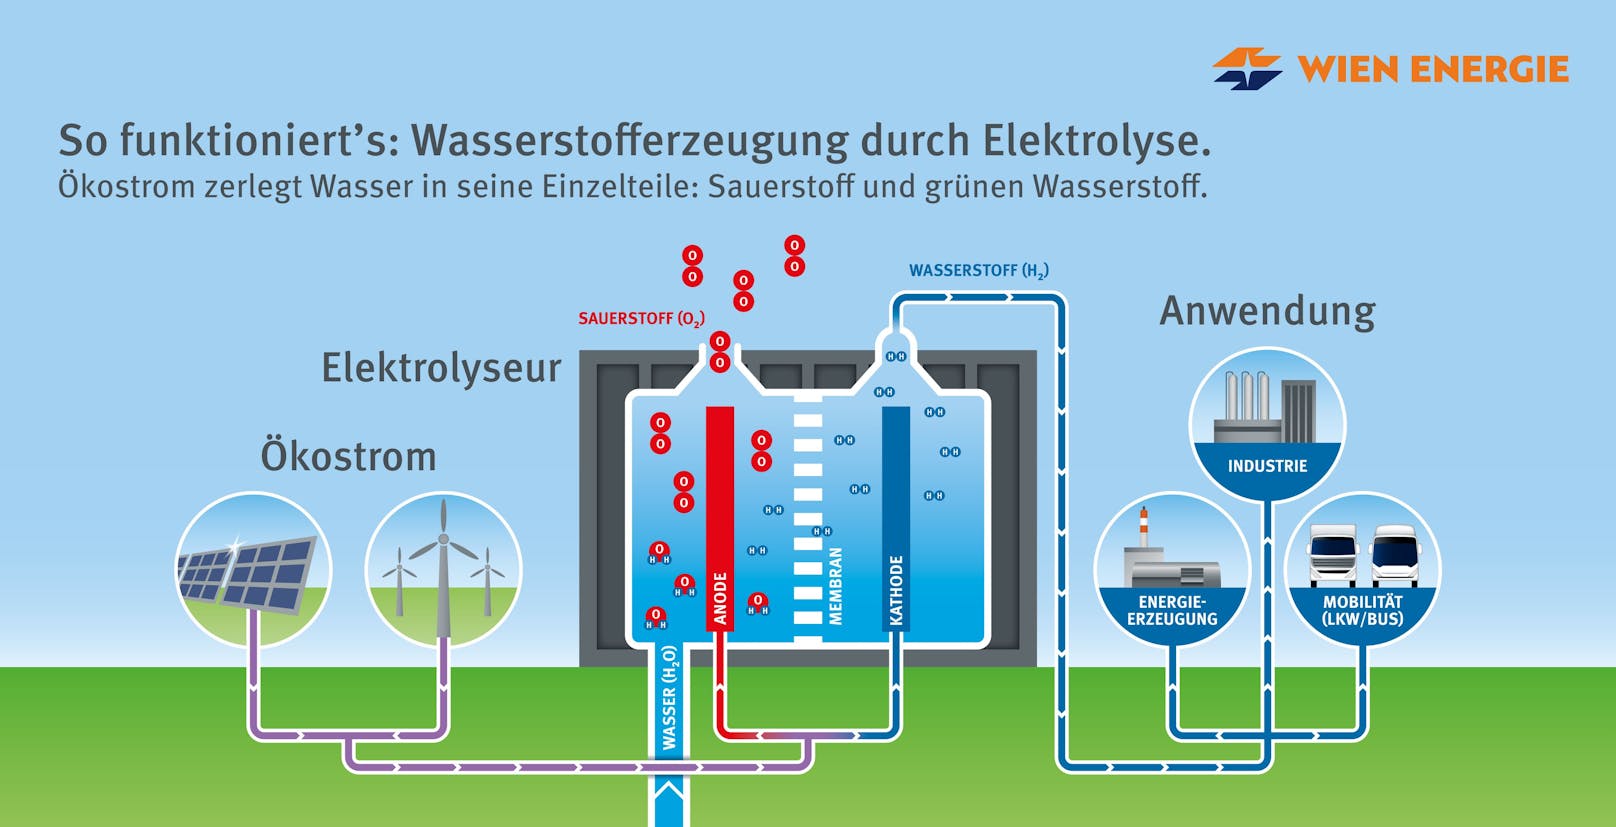 Um aus Ökostrom grünen Wasserstoff zu erzeugen, wird Elektrolyse als Verfahren eingesetzt.